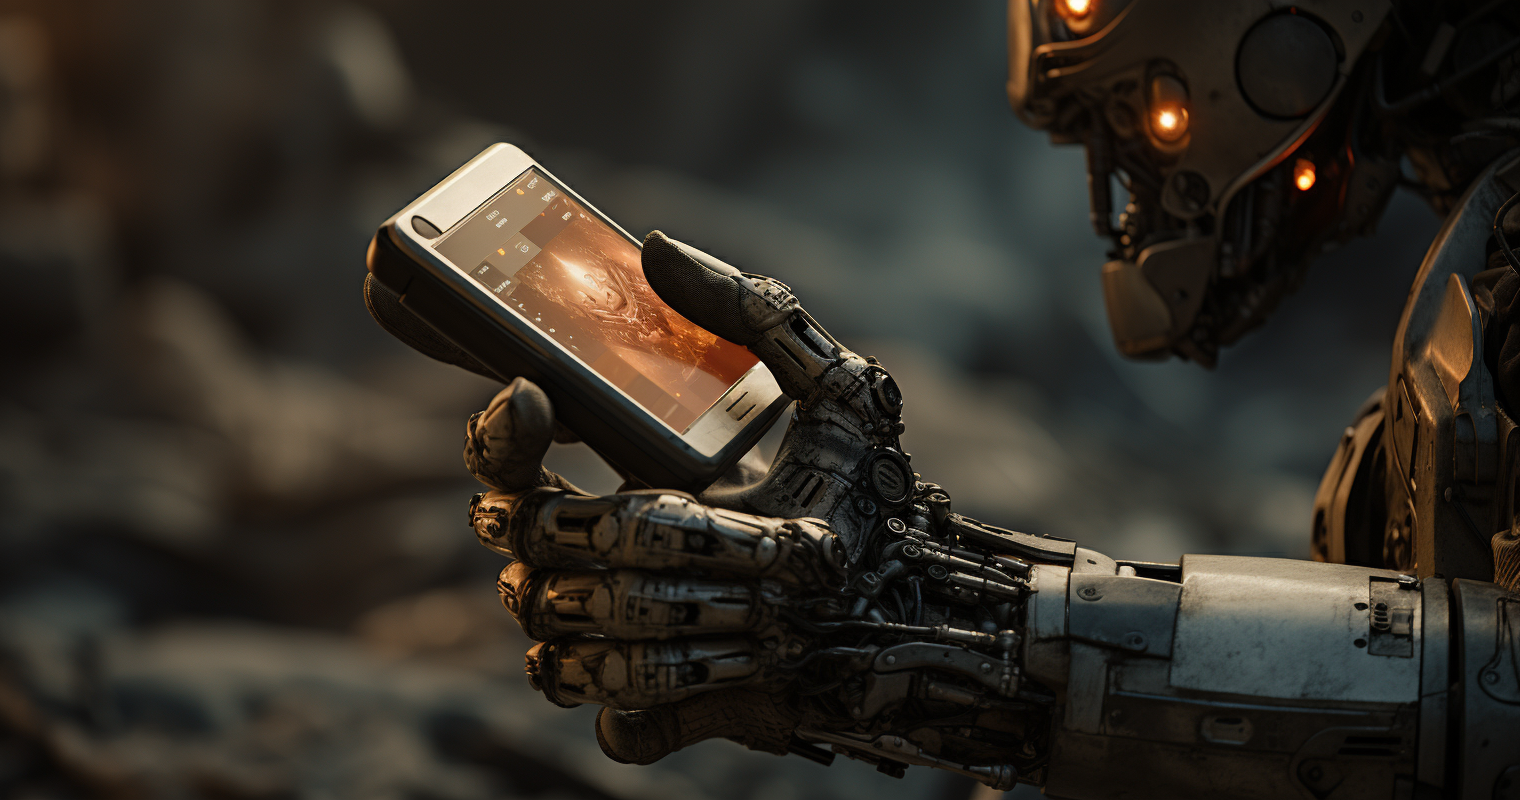 Robot sending an SMS